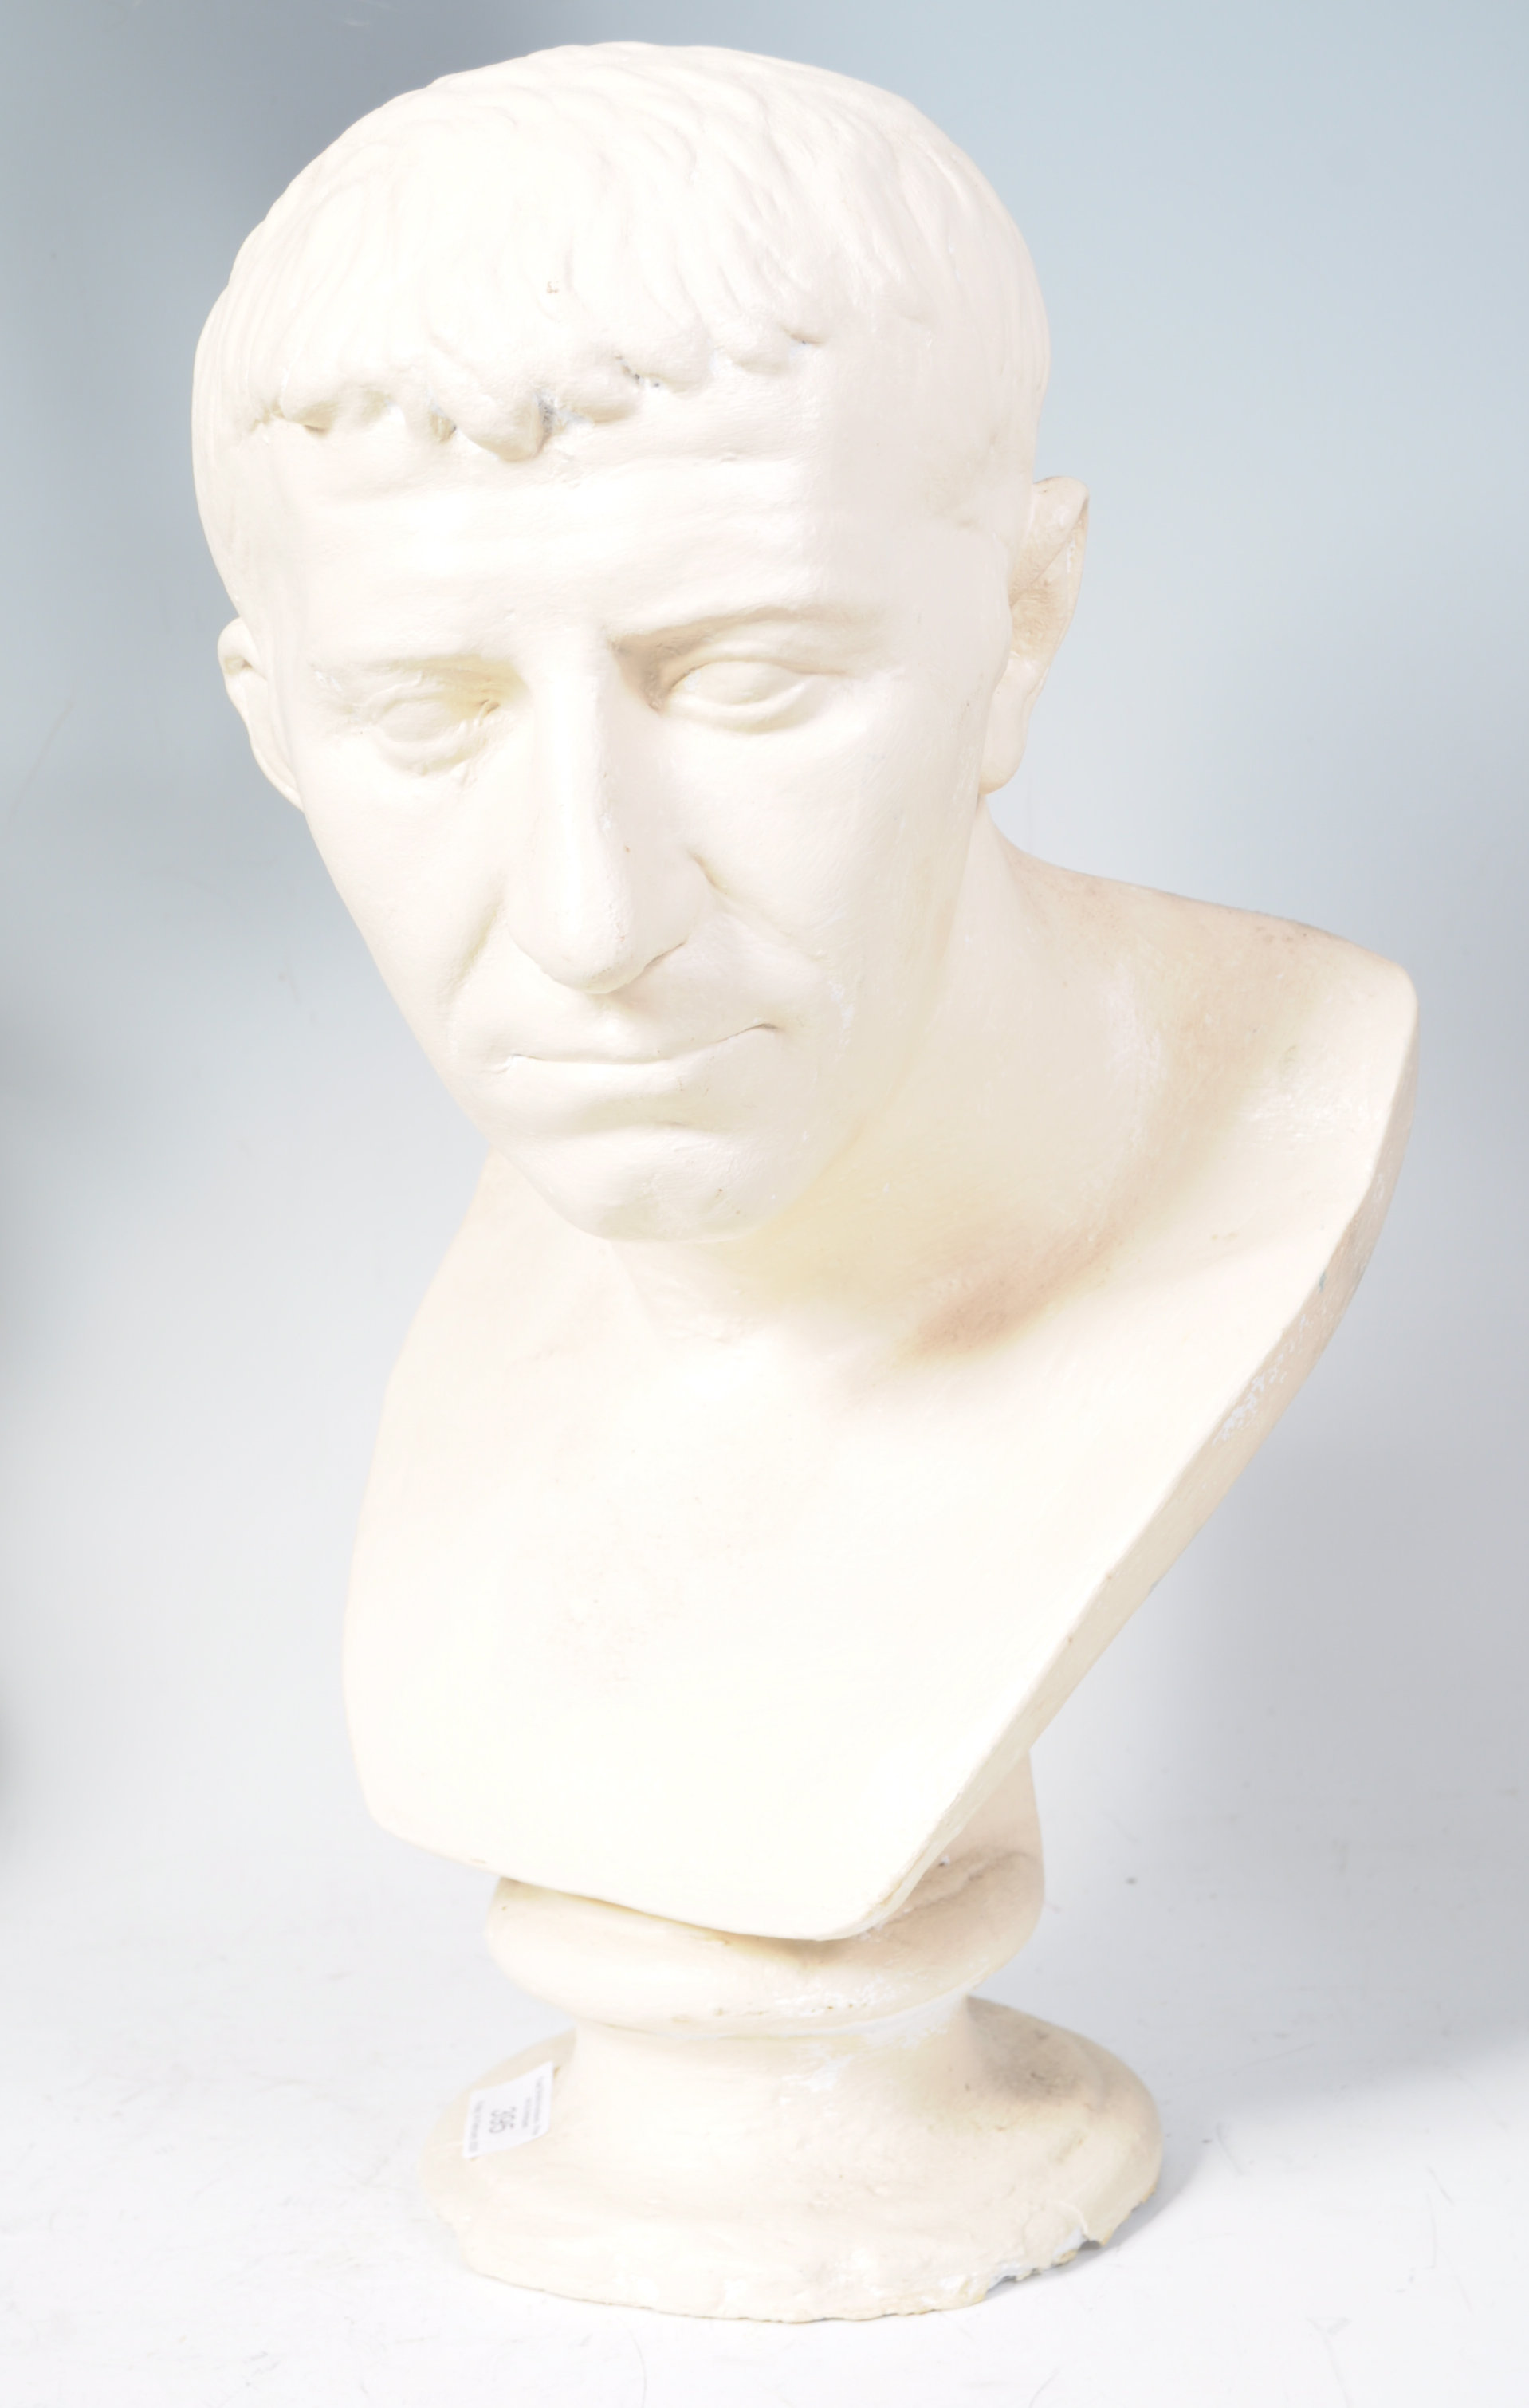 19TH CENTURY PLASTER BUST OF ROMAN EMPEROR JULIUS CAESAR